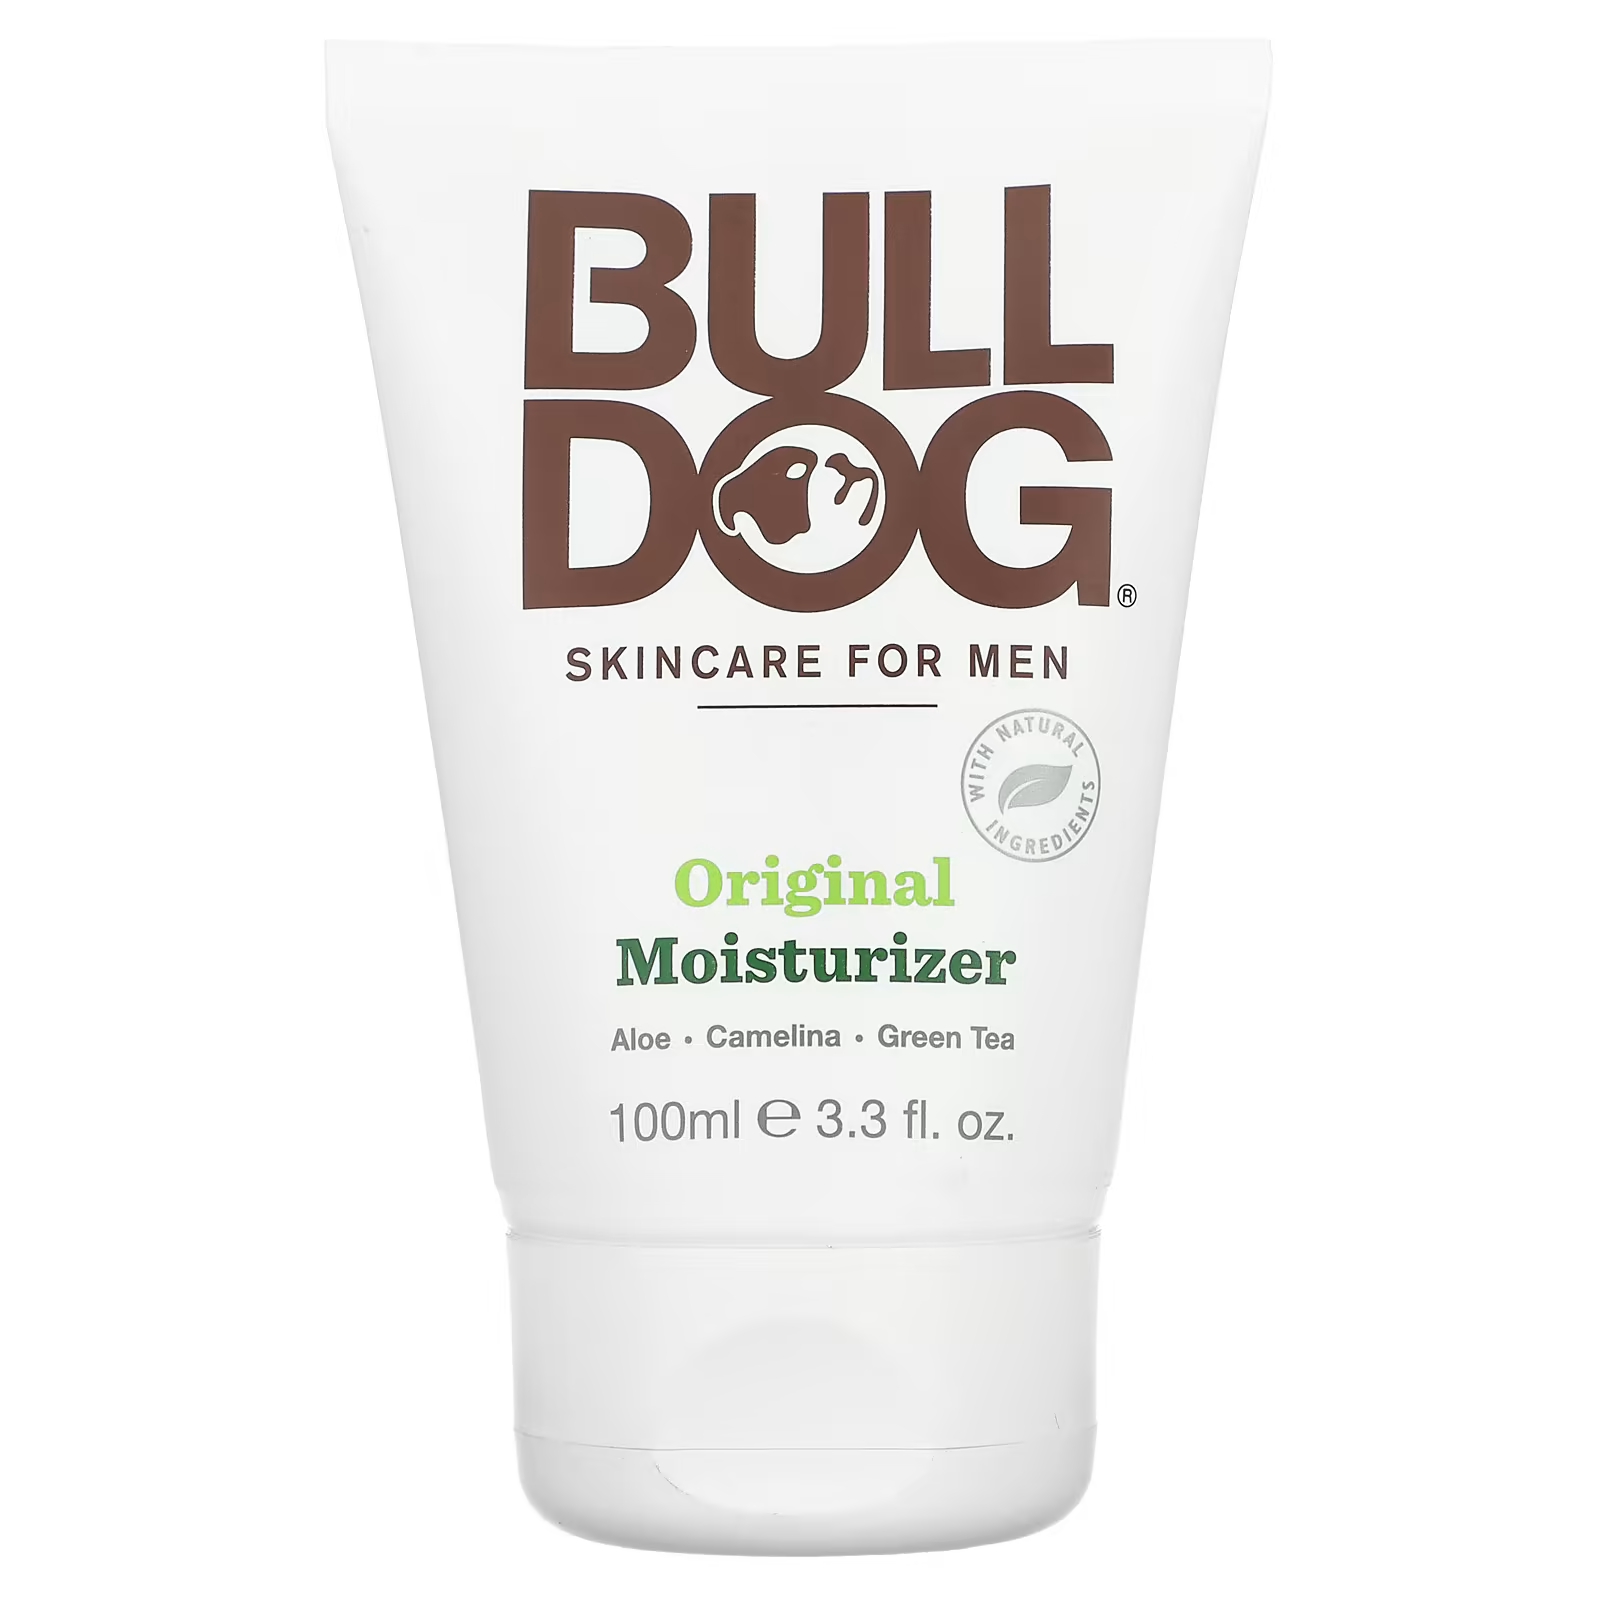 Bulldog Skincare For Men Увлажняющий крем, оригинальный, 3,3 жидких унции (100 мл) bulldog skincare for men увлажняющий крем для жирной кожи лица 100 мл 3 3 жидк унции